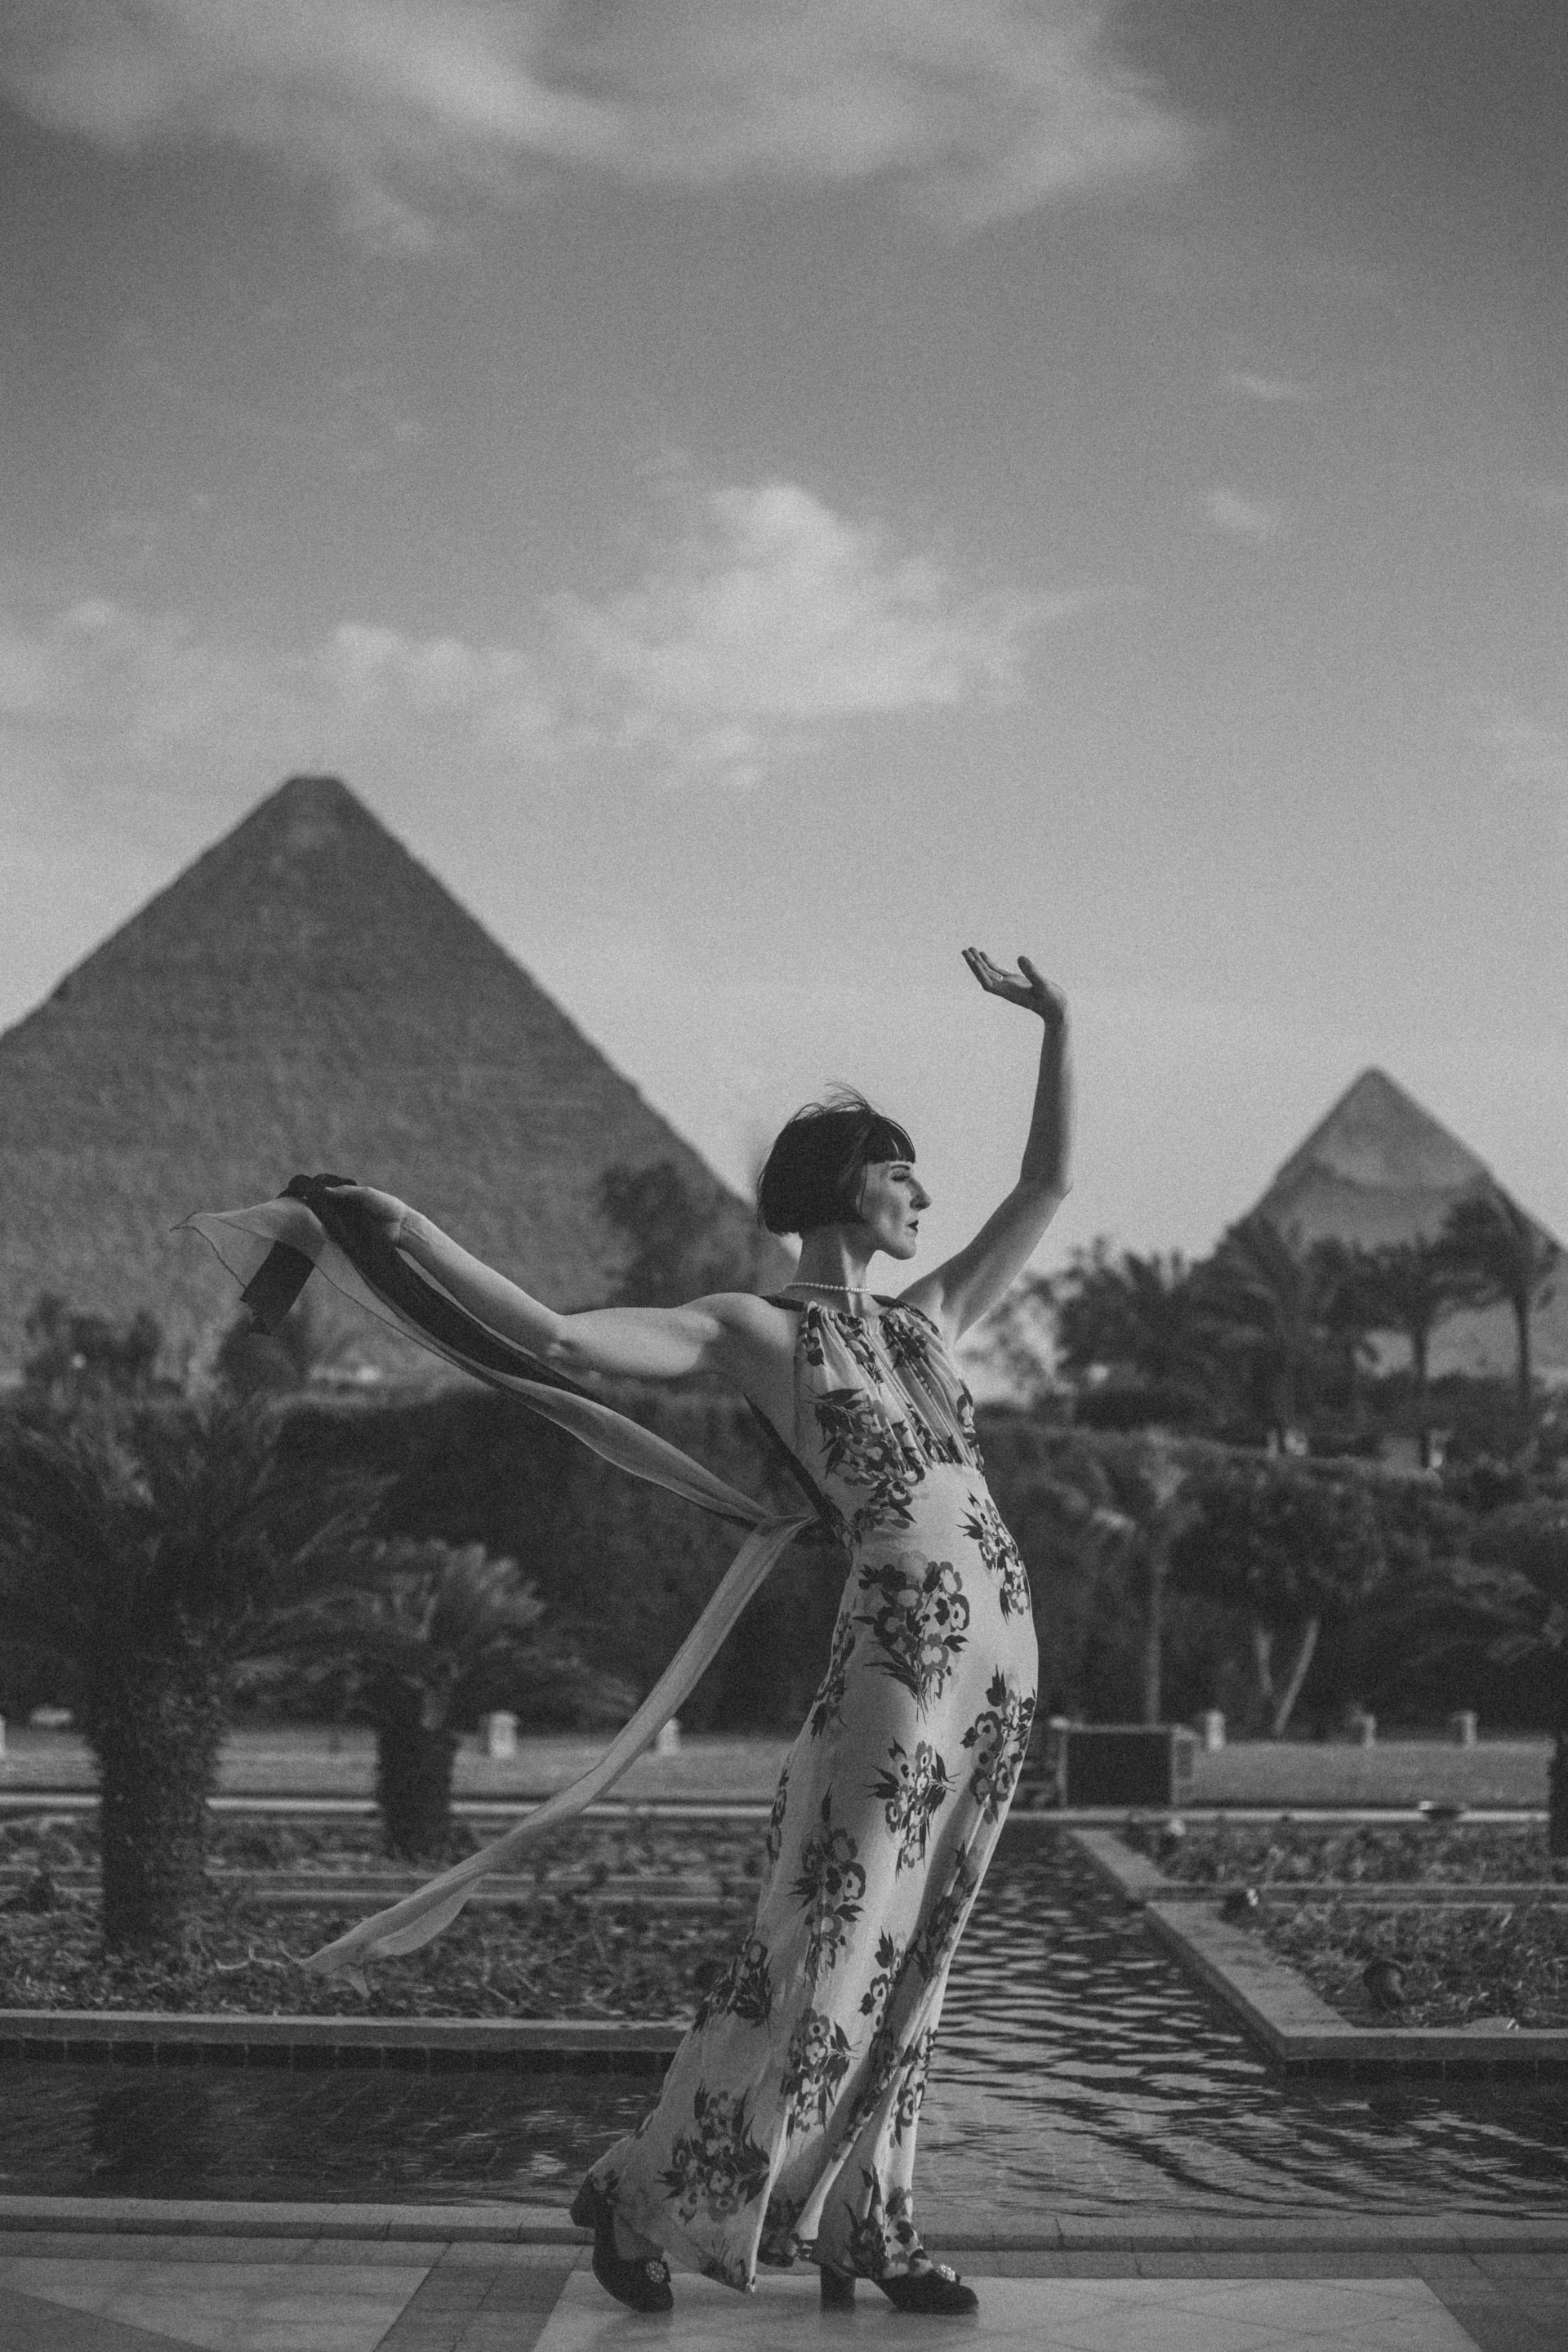 سحر حقبة العشرينيات بمصر تعود إلى الحياة على يد هذا المصور